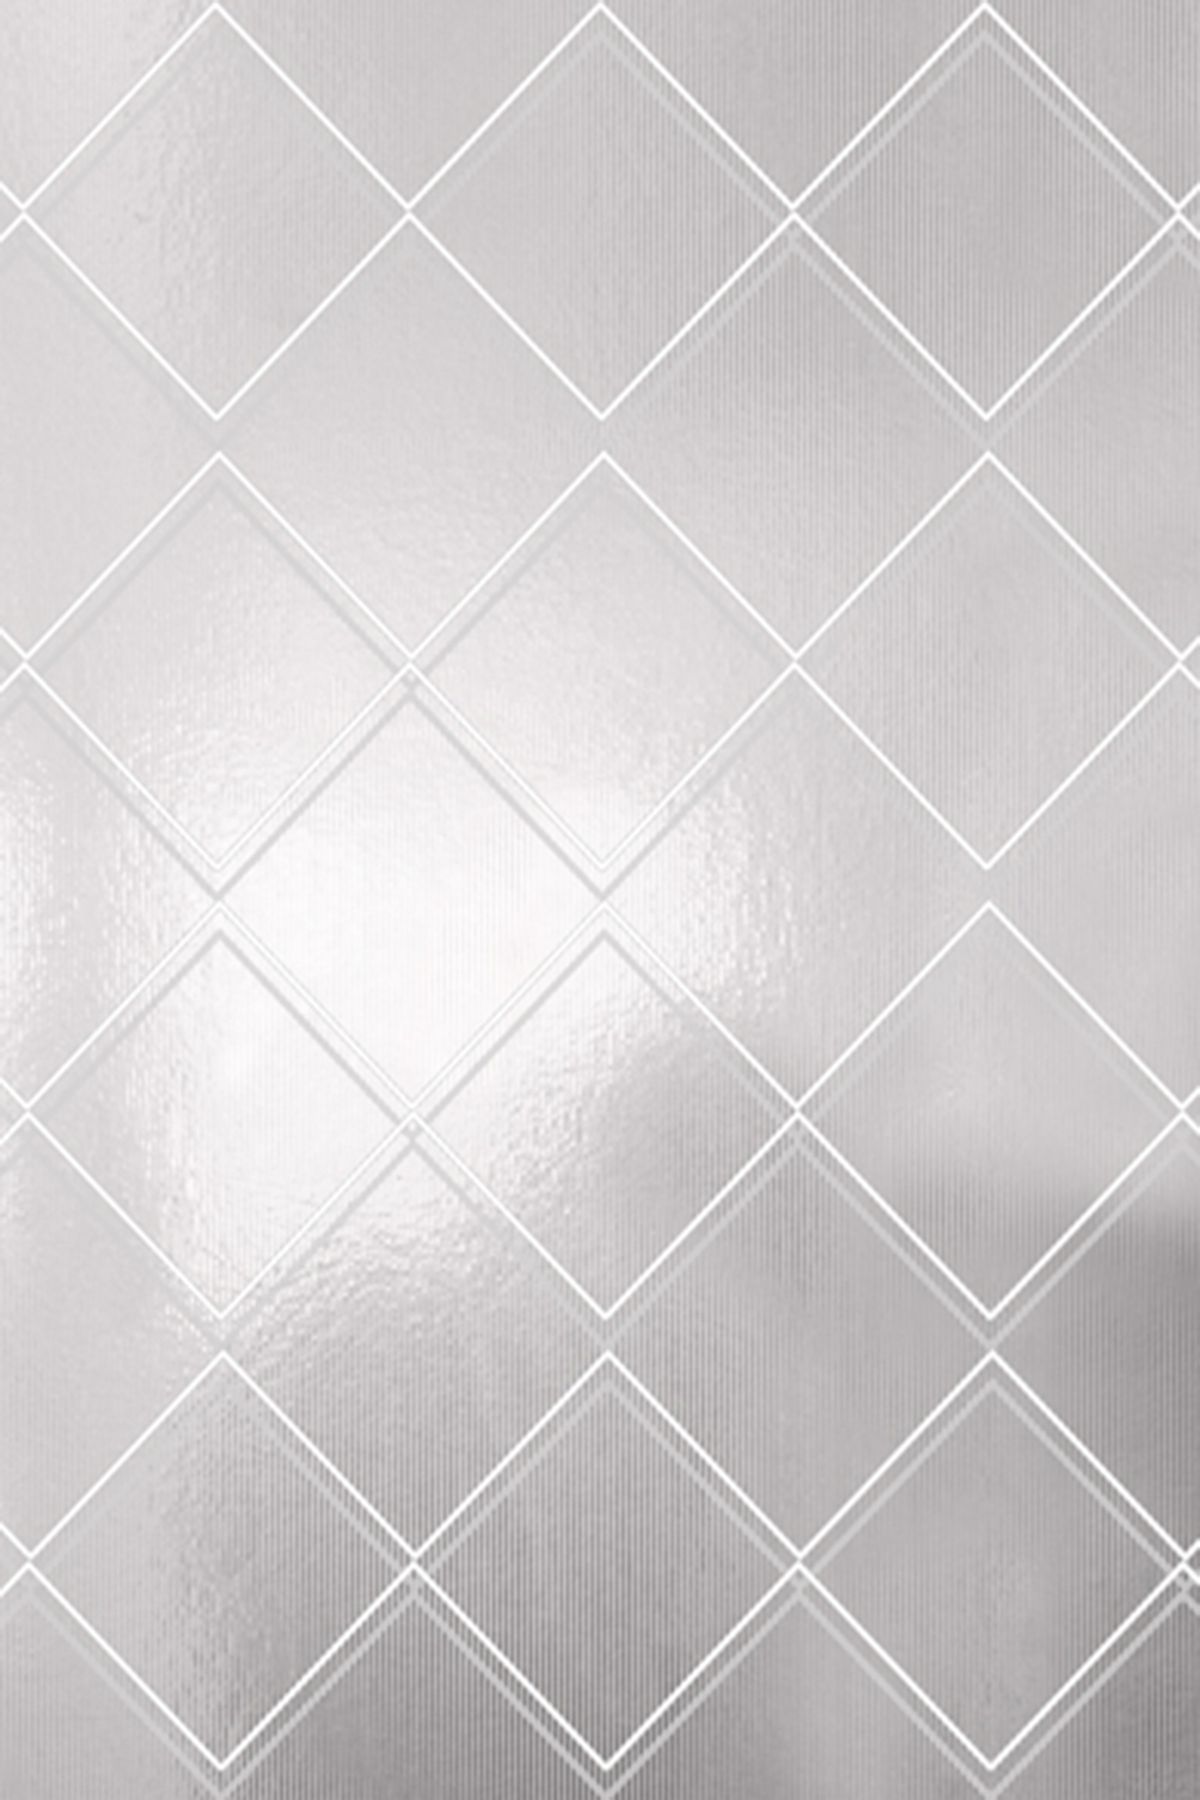 Argyle Wallpaper - White Silver Monument Interiors